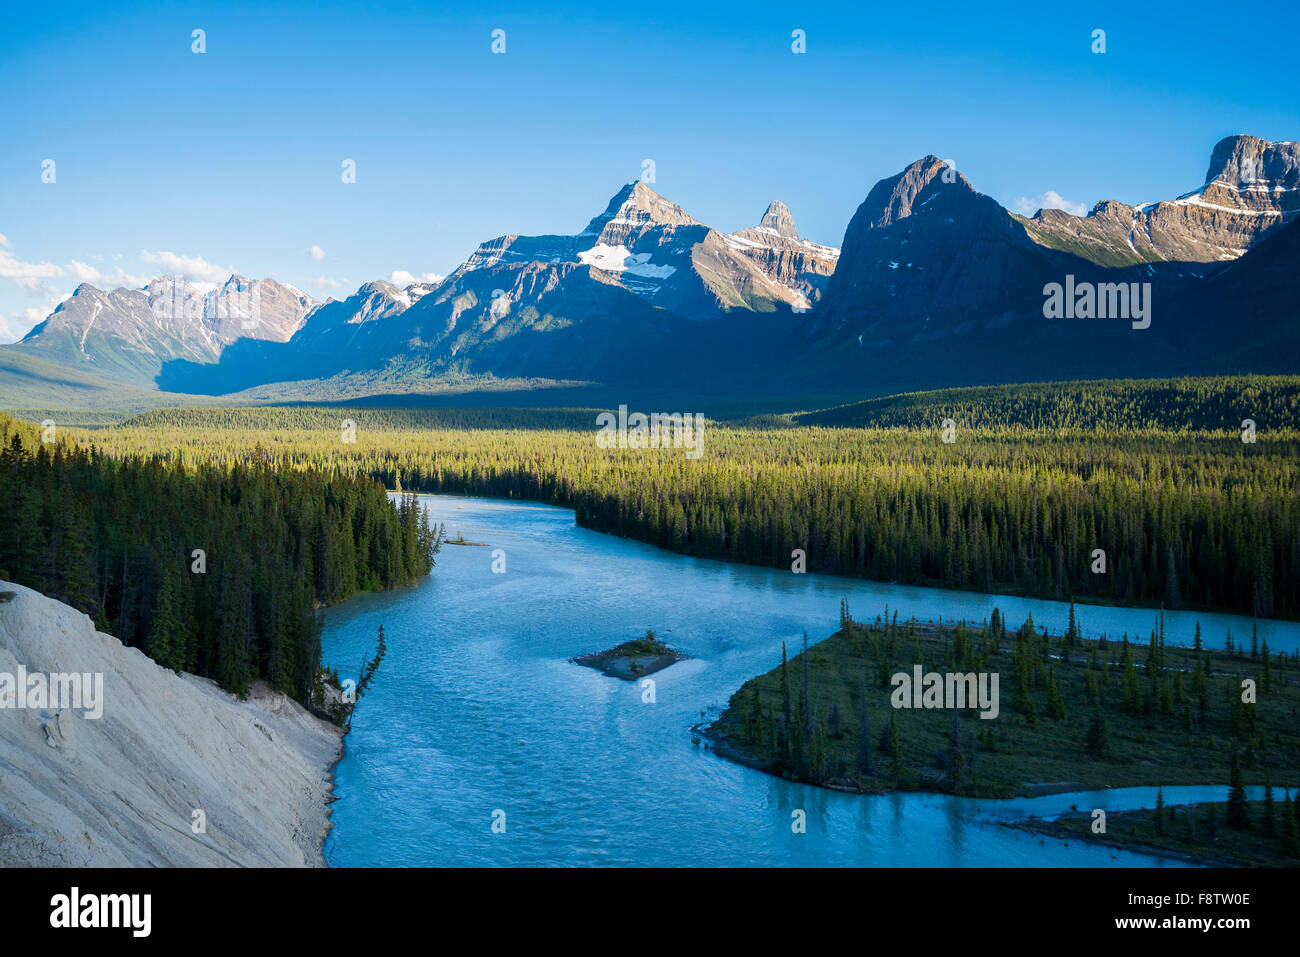 La rivière Athabasca, Jasper National Park, Alberta, Canada Banque D'Images